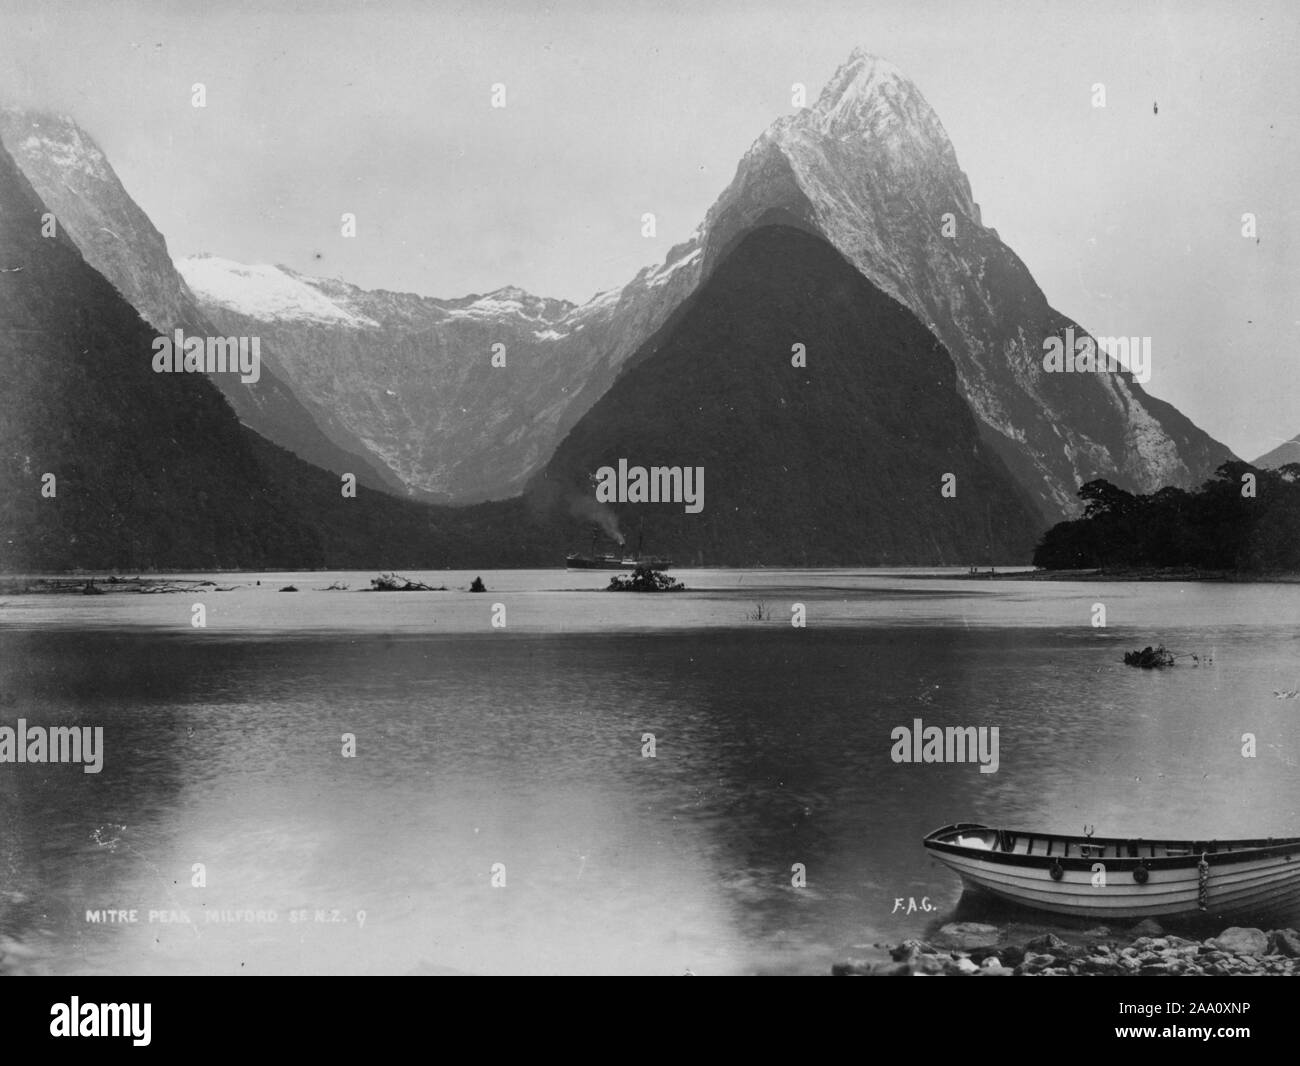 Paysage noir et blanc photographie de la Mitre Peak Mountain et Milford Sound, l'un des fjords qui forment la côte de Fiordland dans l'île du Sud, Nouvelle-Zélande, par le photographe Frank Coxhead, 1885. À partir de la Bibliothèque publique de New York. () Banque D'Images